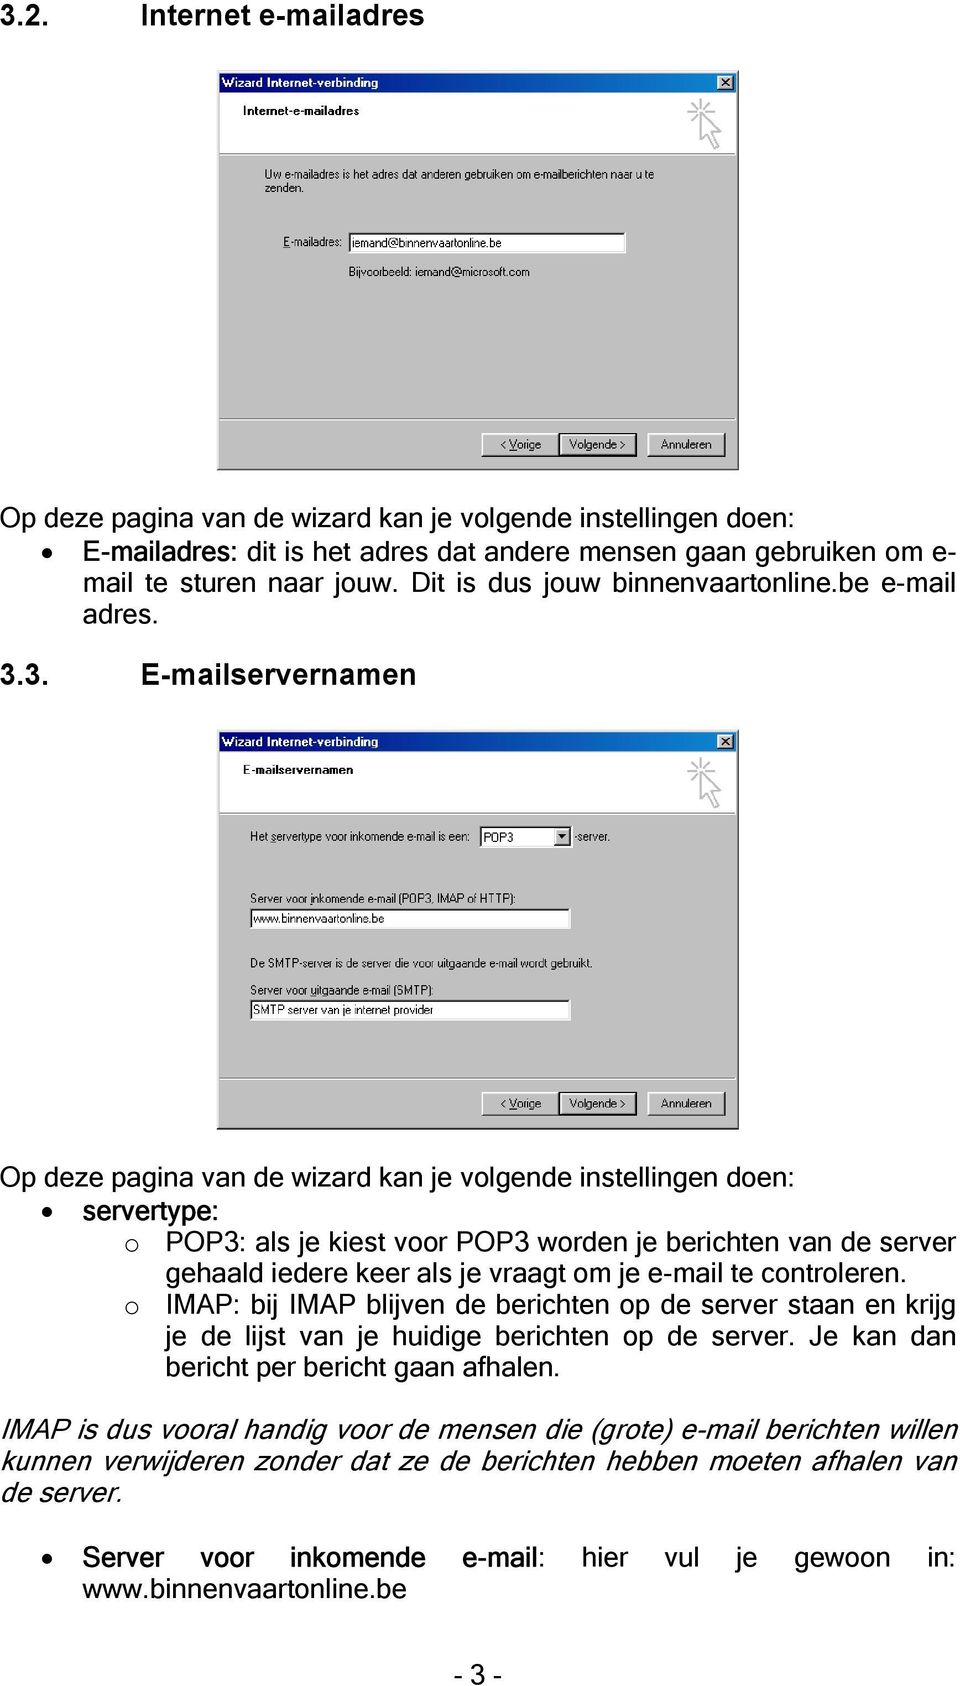 3. E-mailservernamen Op deze pagina van de wizard kan je volgende instellingen doen: servertype: o POP3: als je kiest voor POP3 worden je berichten van de server gehaald iedere keer als je vraagt om